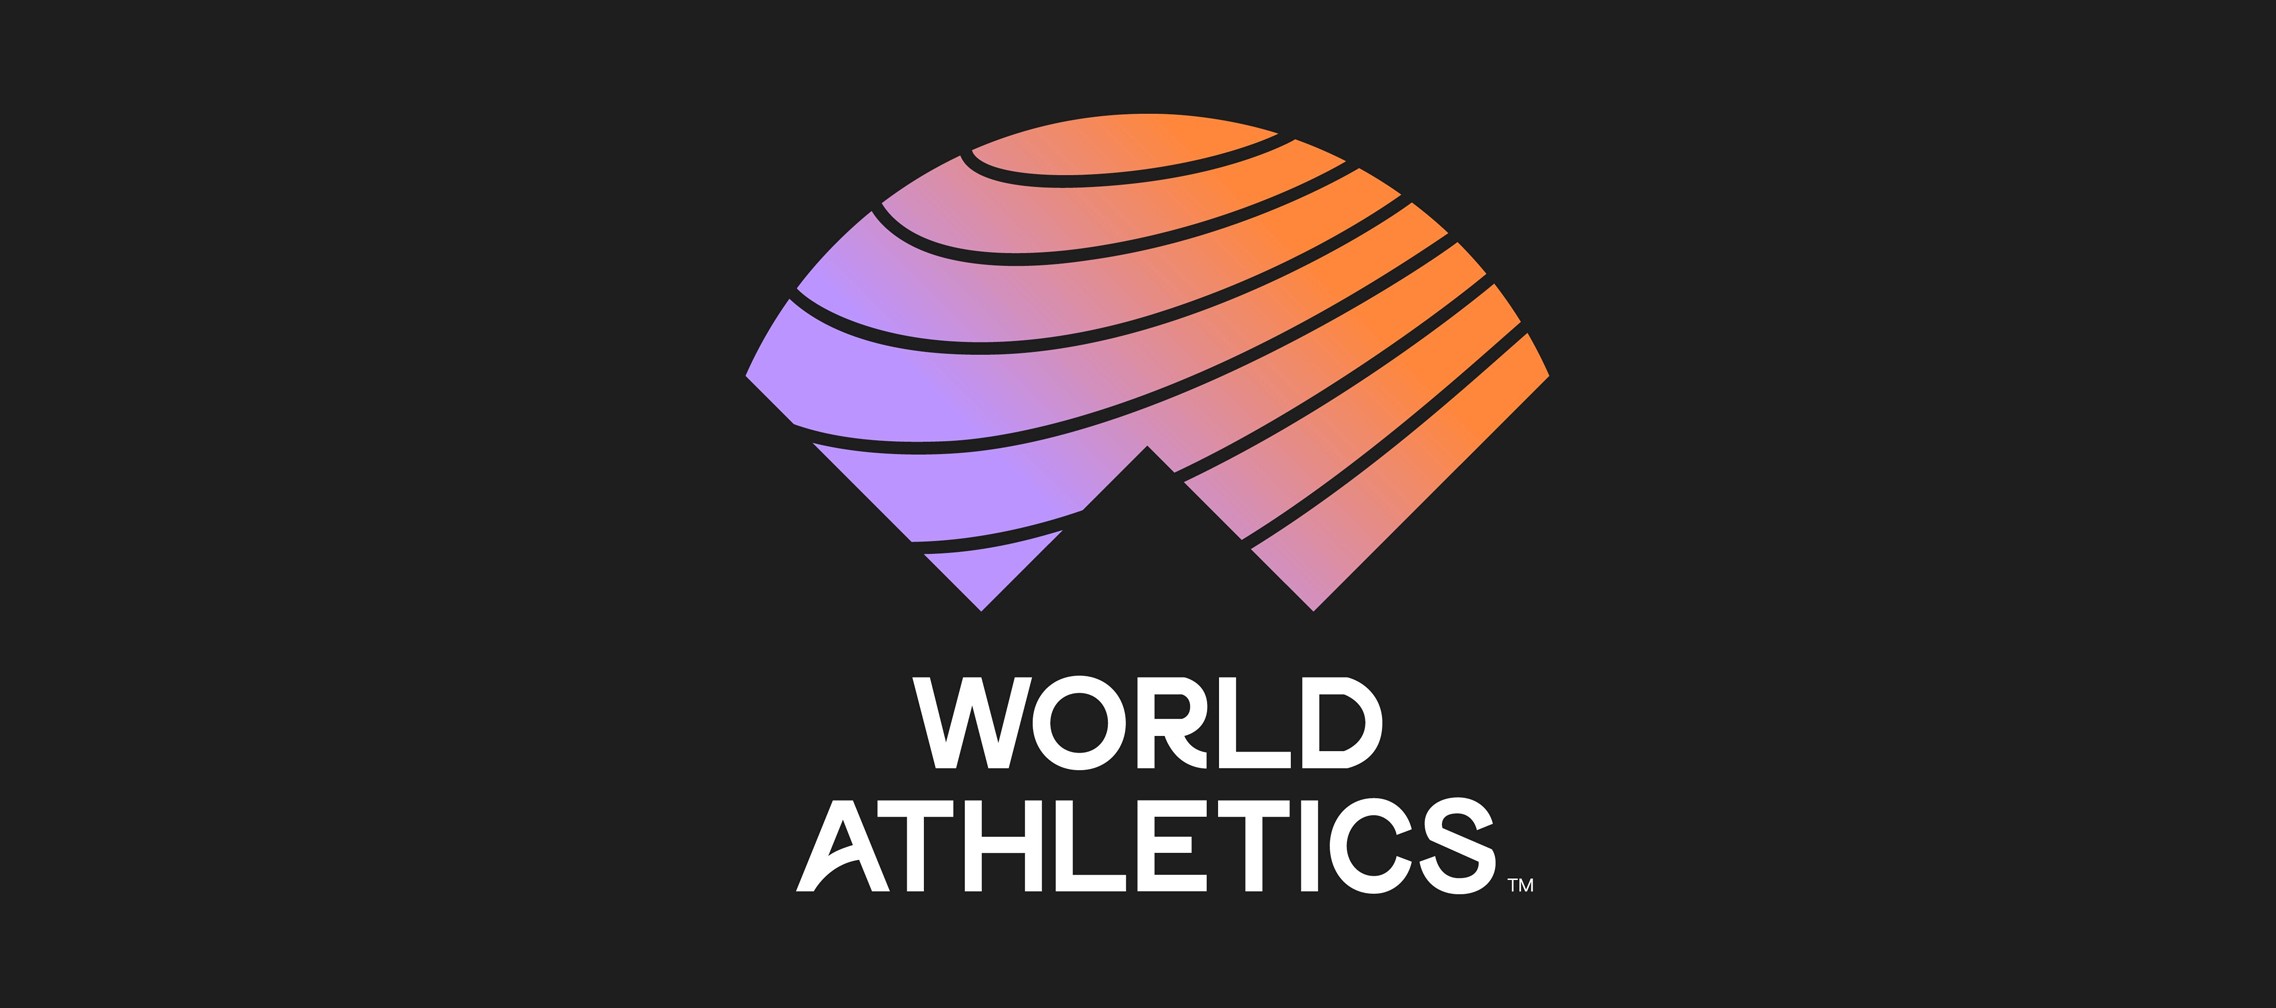 Atletismo internacional: cómo la Diosa de la Victoria cedió su trono a una  'W' y una 'A' más universales - Mondo Ibérica - News